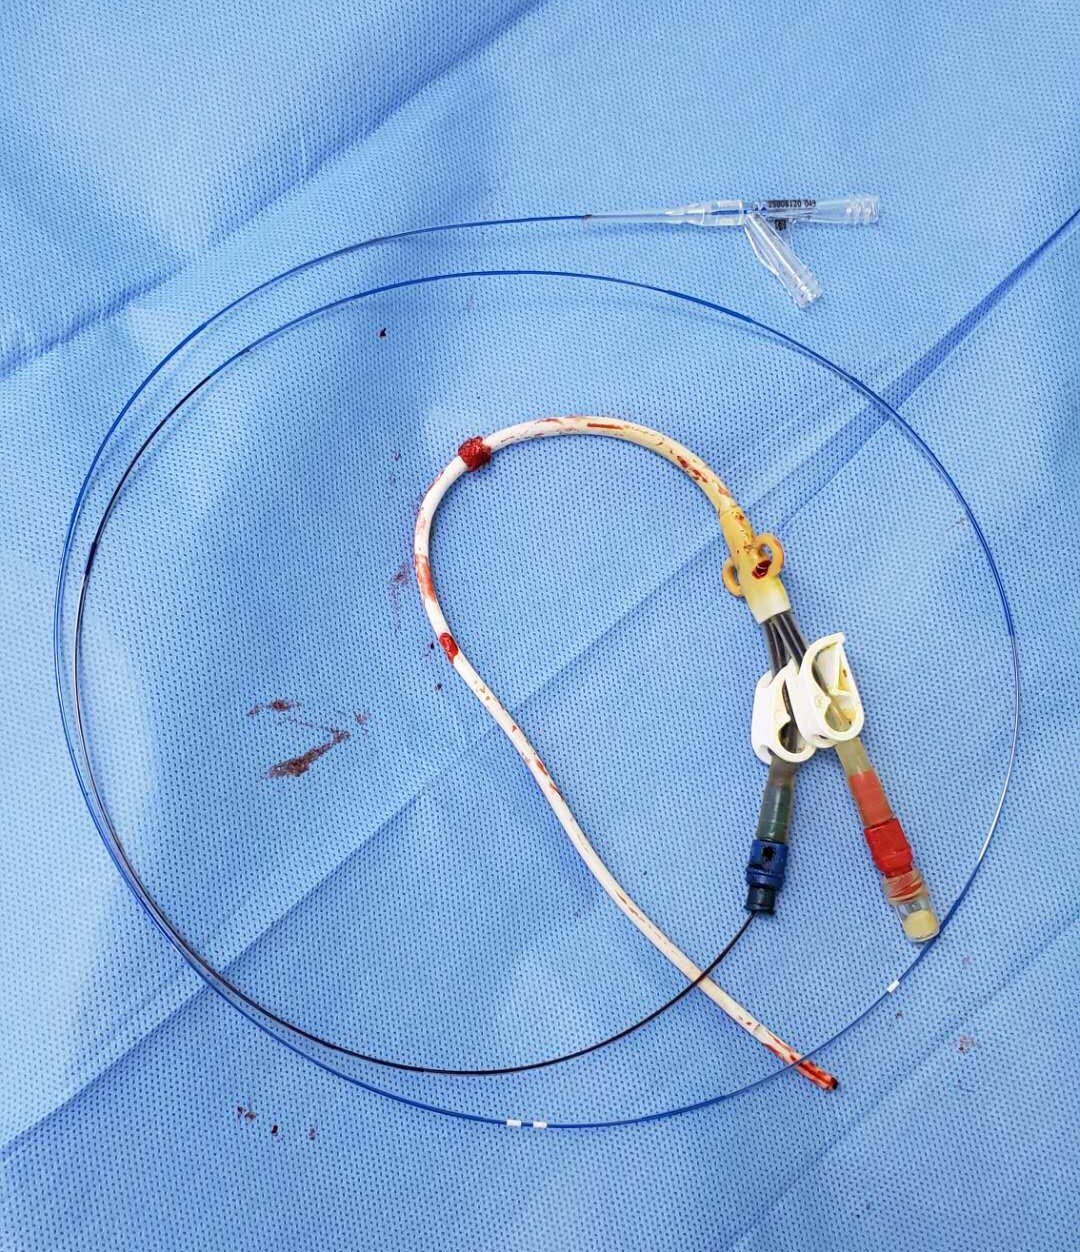 一例植入10年的颈内静脉透析导管拔除 